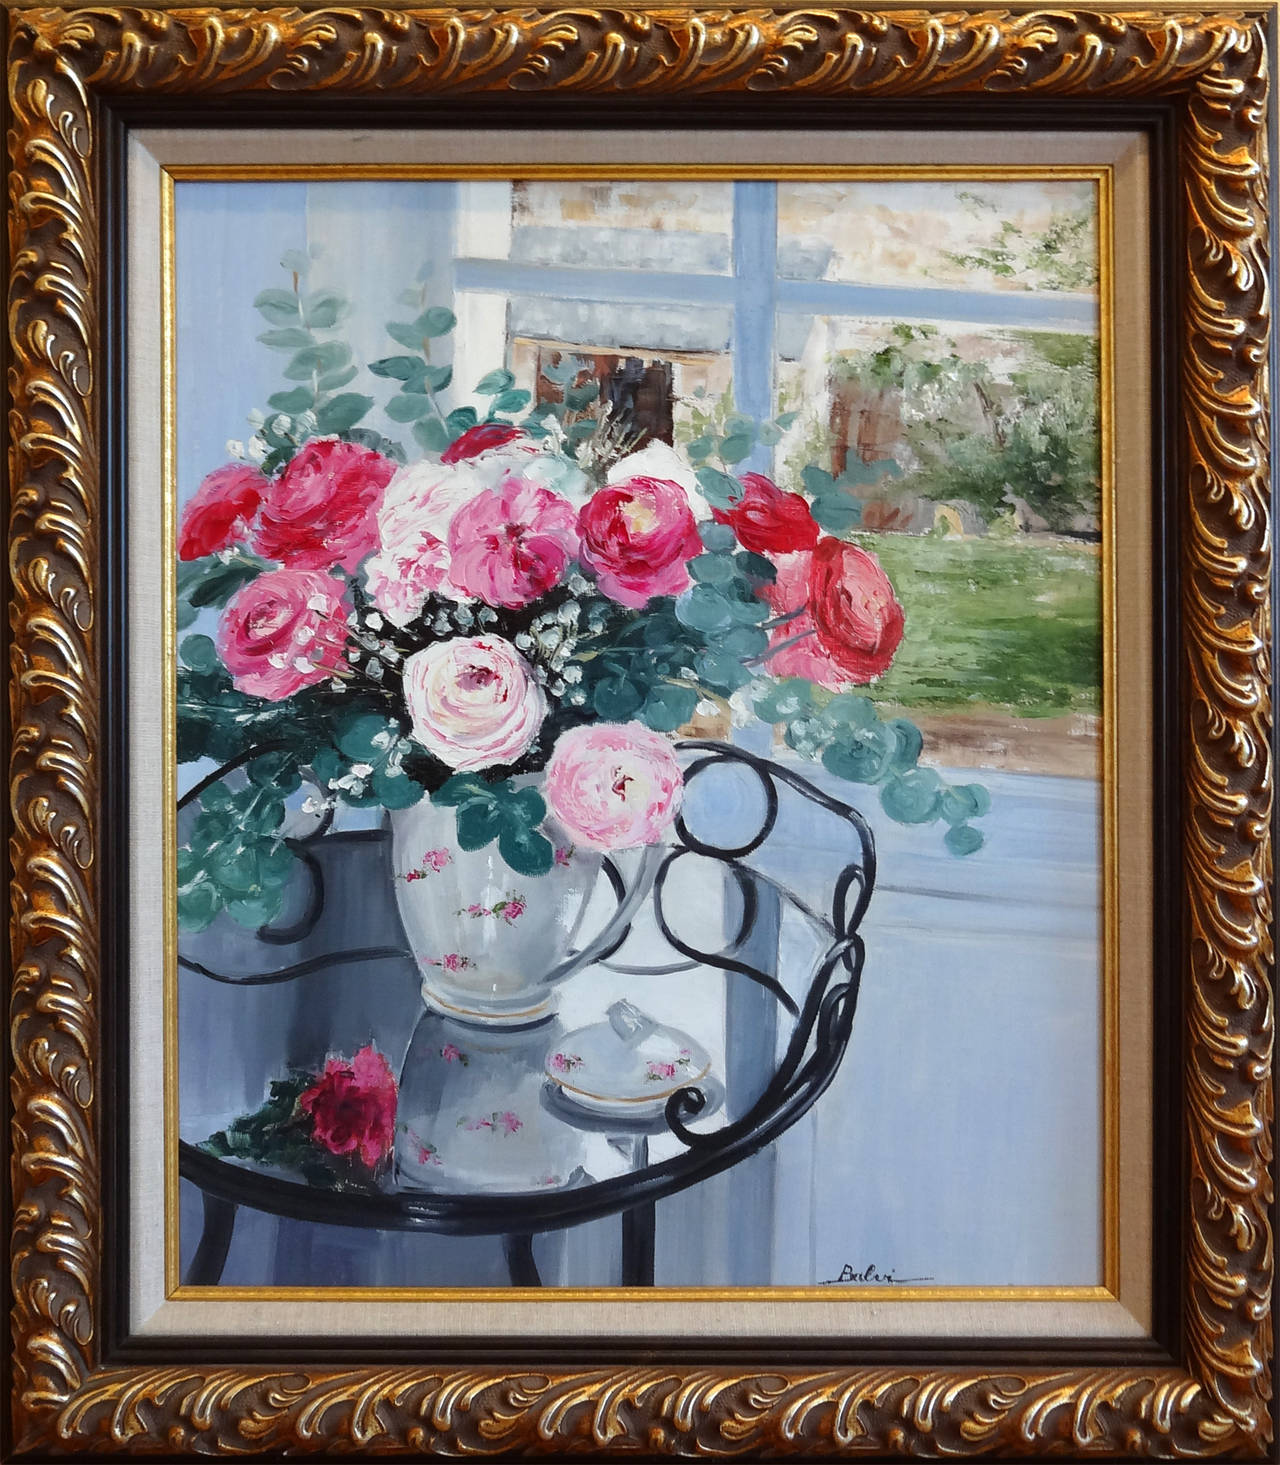 The bouquet in front of the window (Le Bouquet Devant la Fenetre) - Painting by Simone Balvi